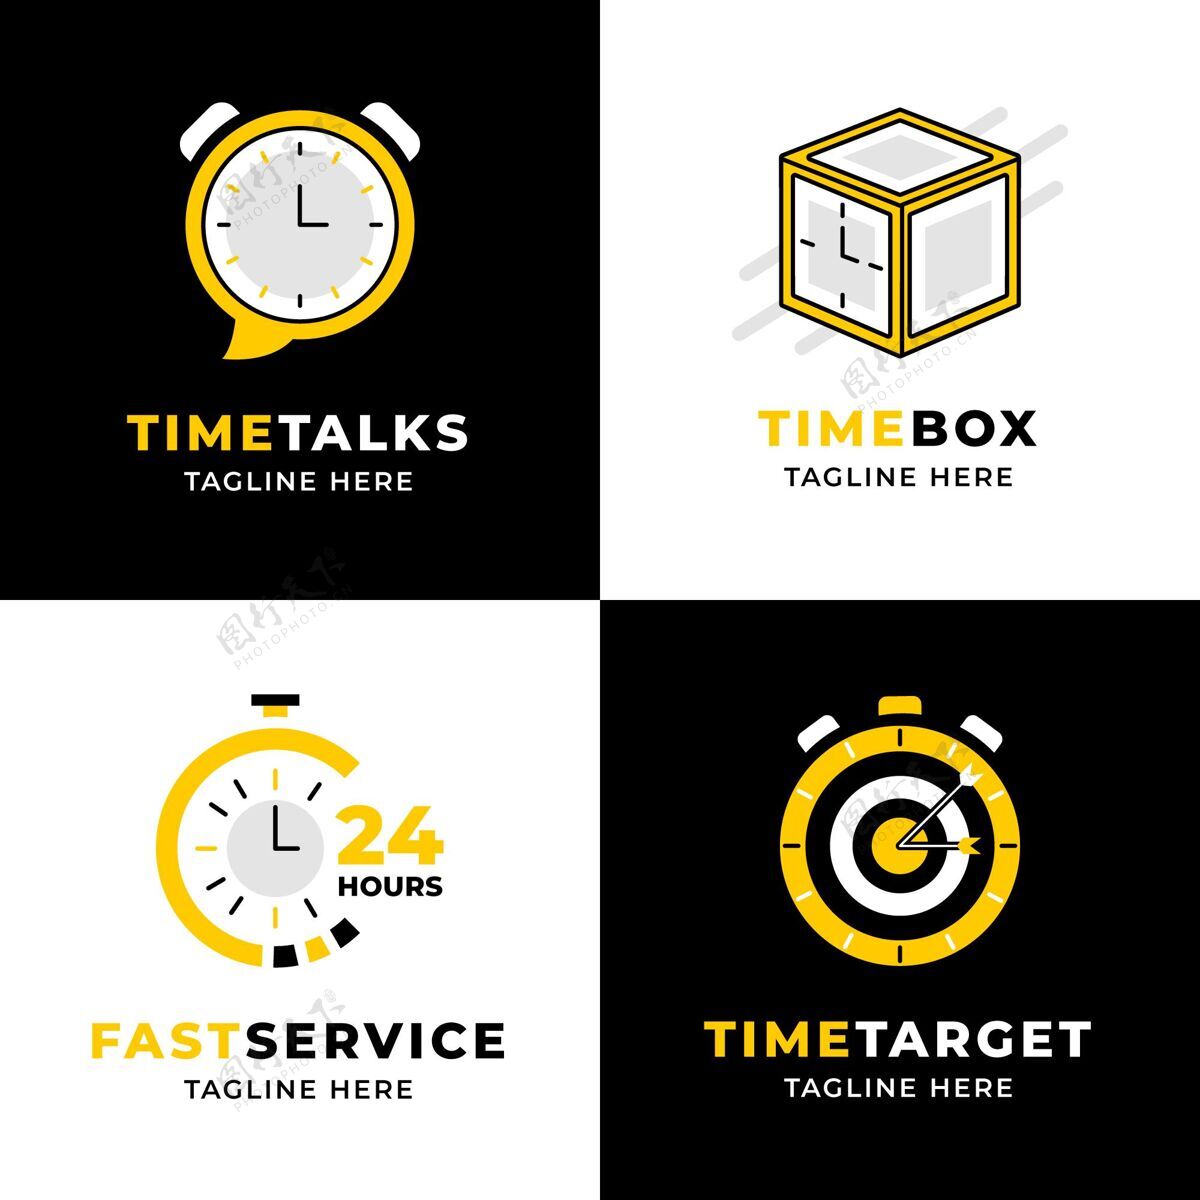 企业标识平面设计时间标志收集公司标识标识模板时间标识